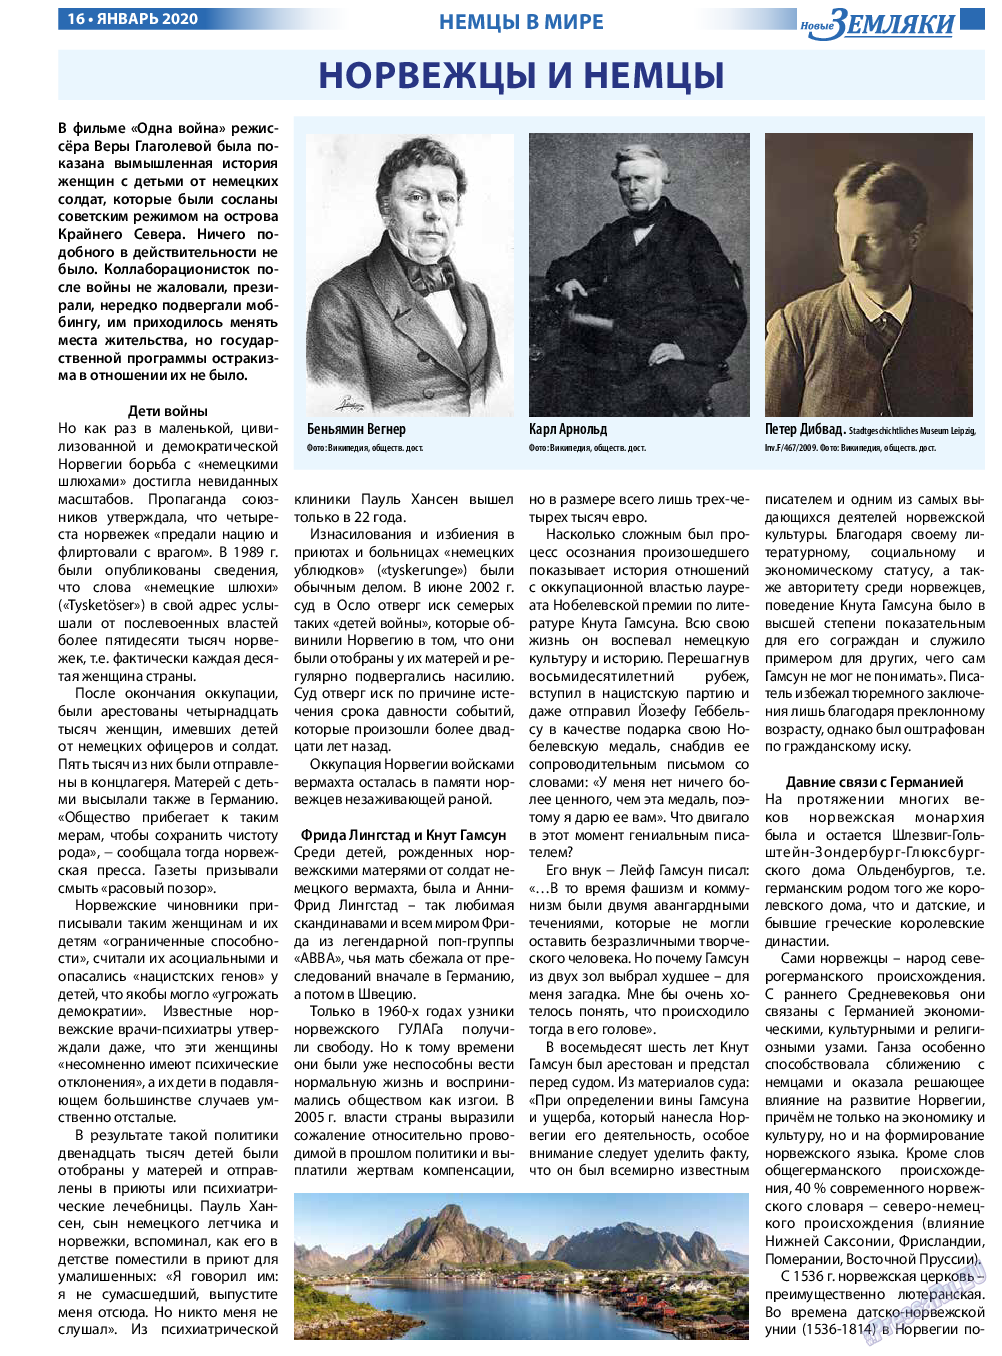 Новые Земляки, газета. 2020 №1 стр.16